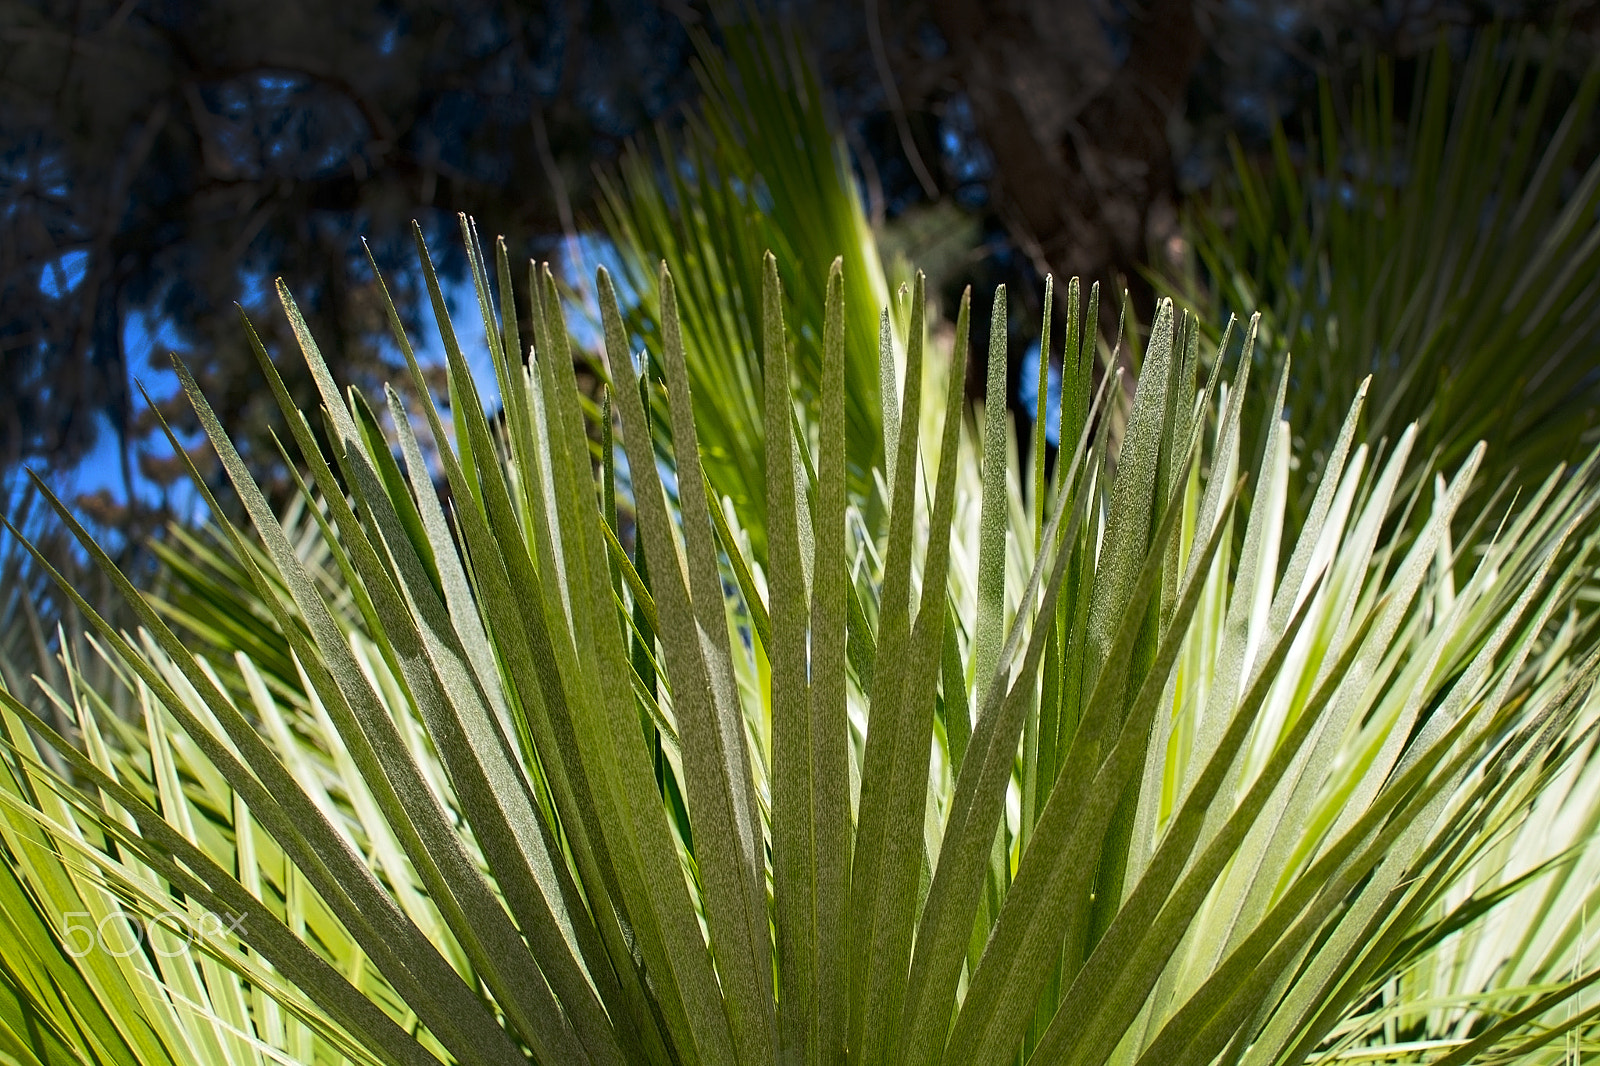 AF Nikkor 70-210mm f/4-5.6D sample photo. Green sunlit palm leaf photography